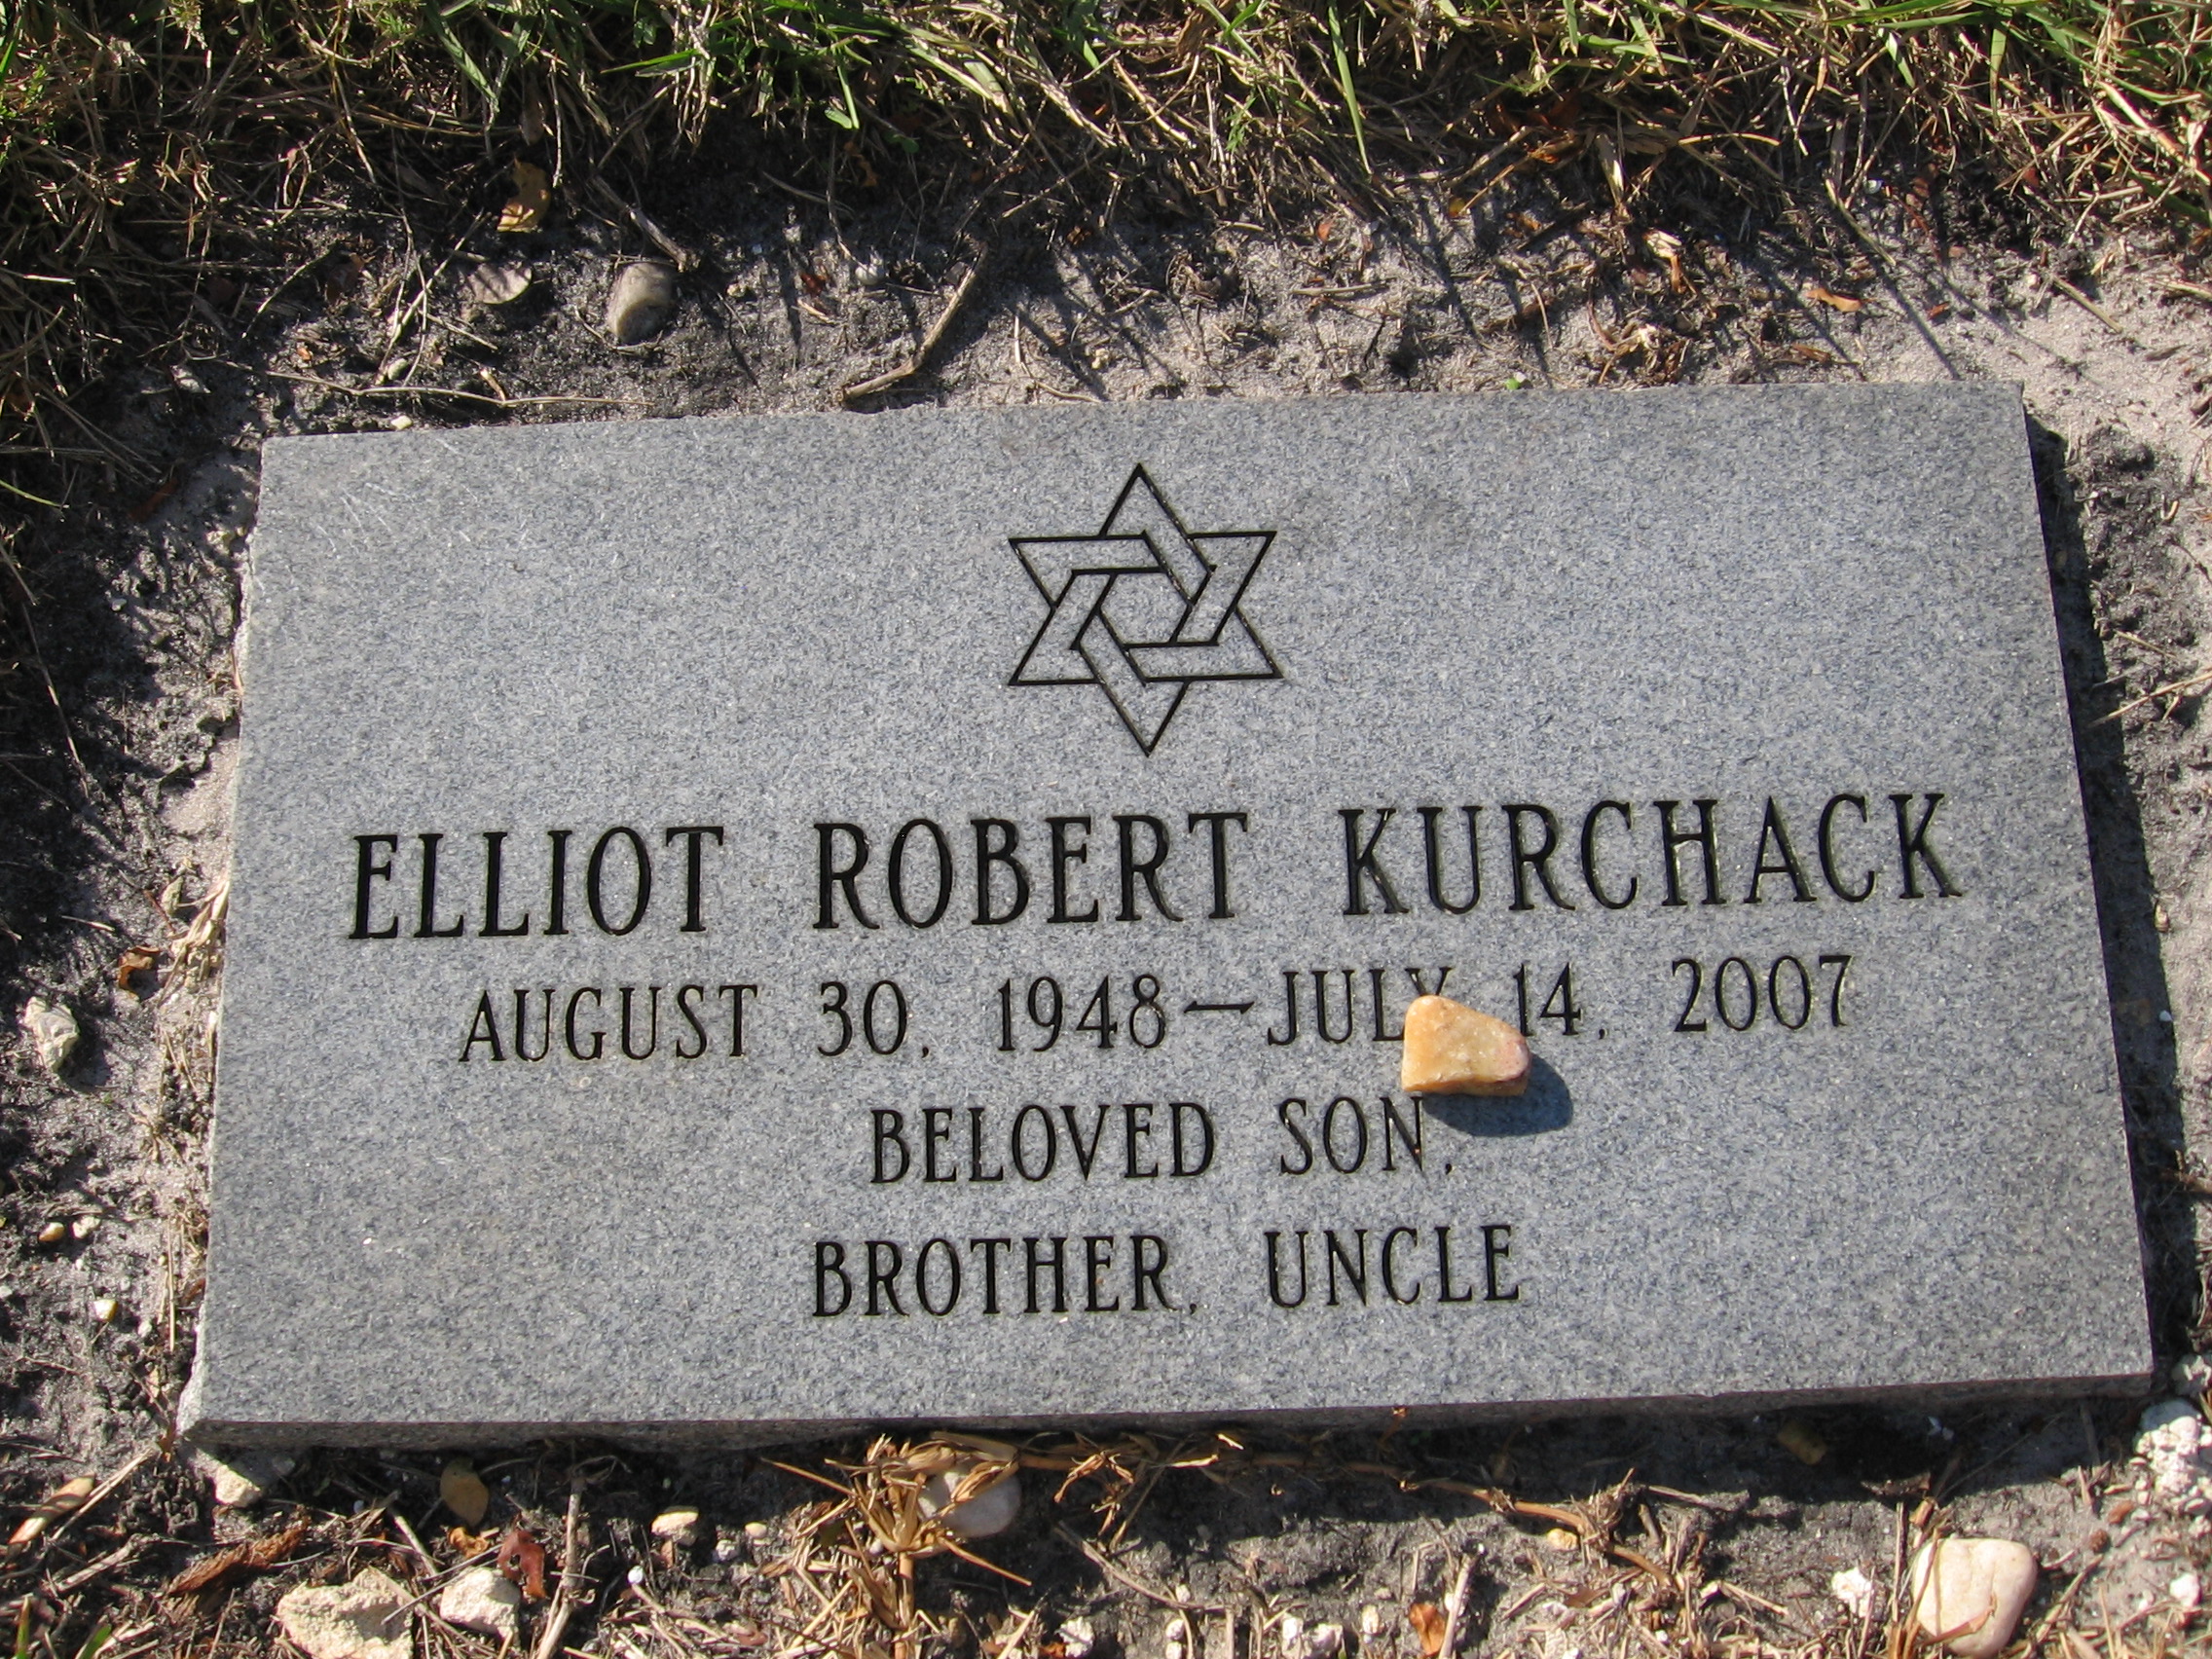 Elliot Robert Kurchack